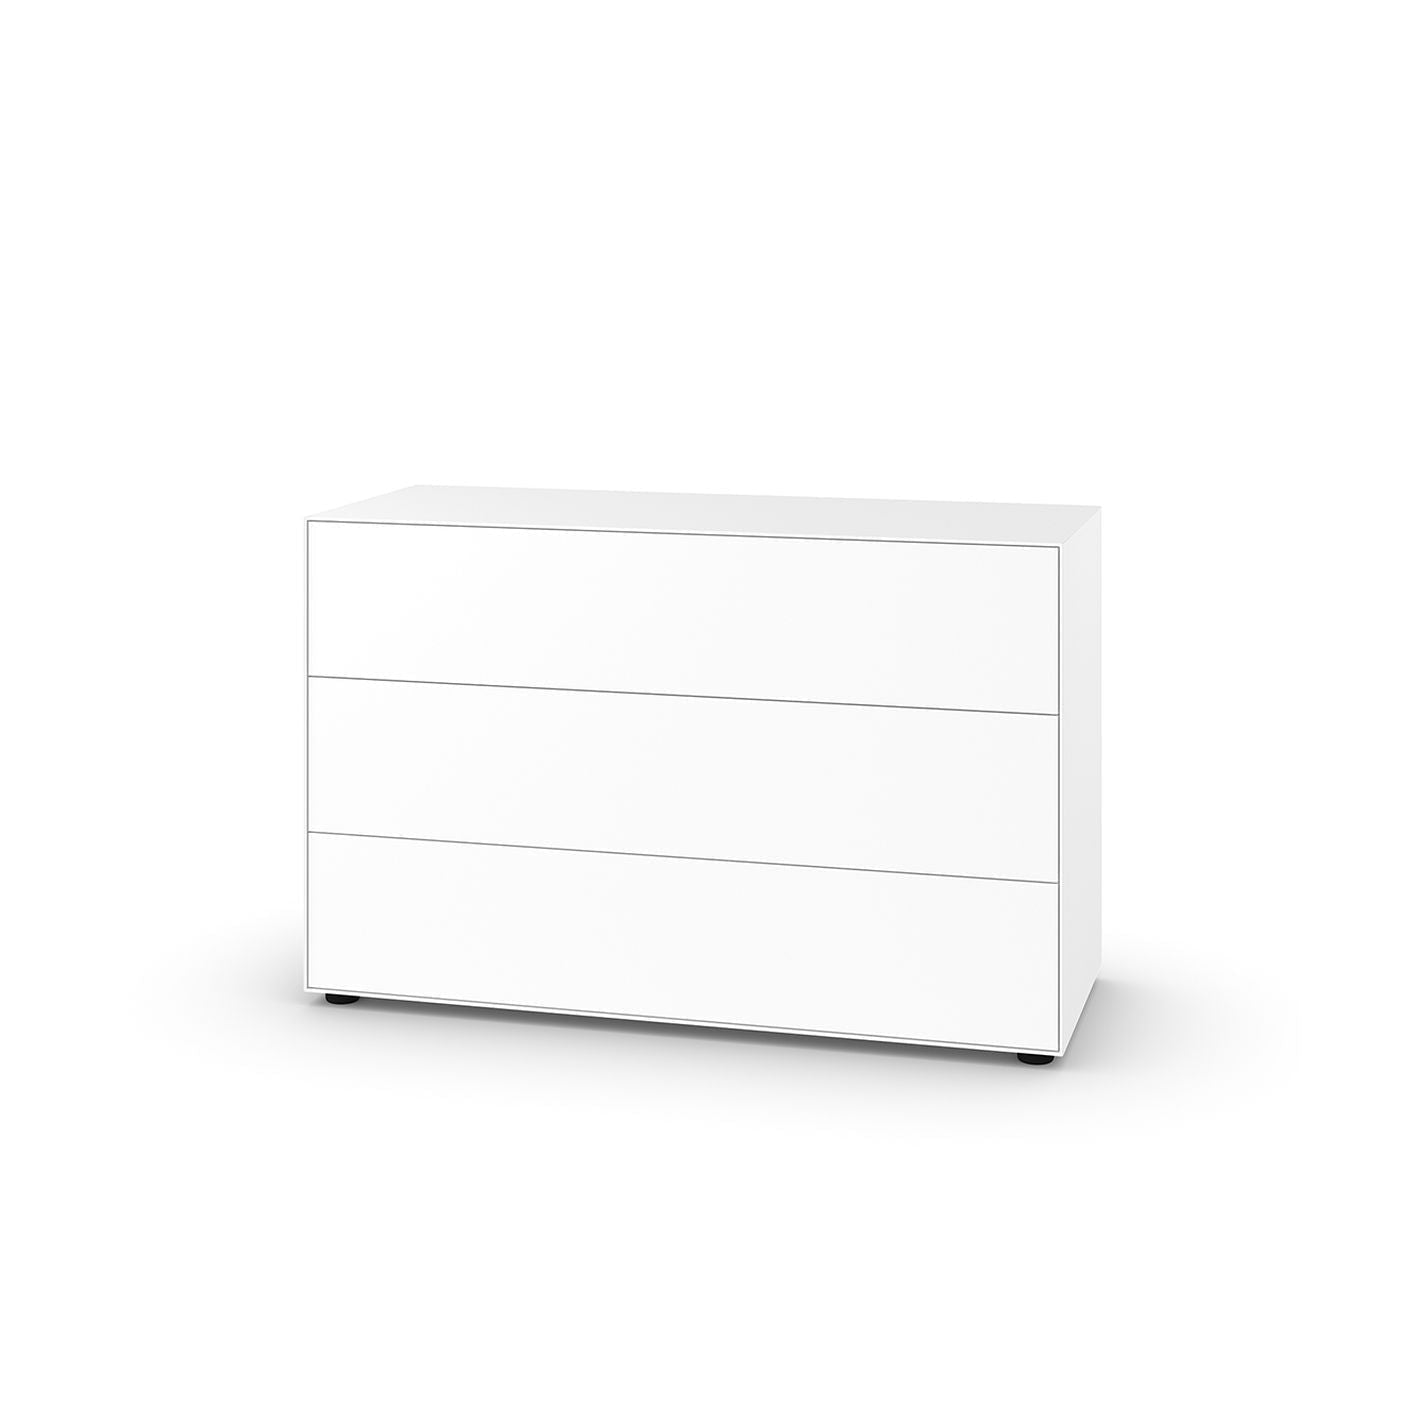 Piure Nex Pur Box HX W 75X120 cm, 3 laatikkoa, valkoinen